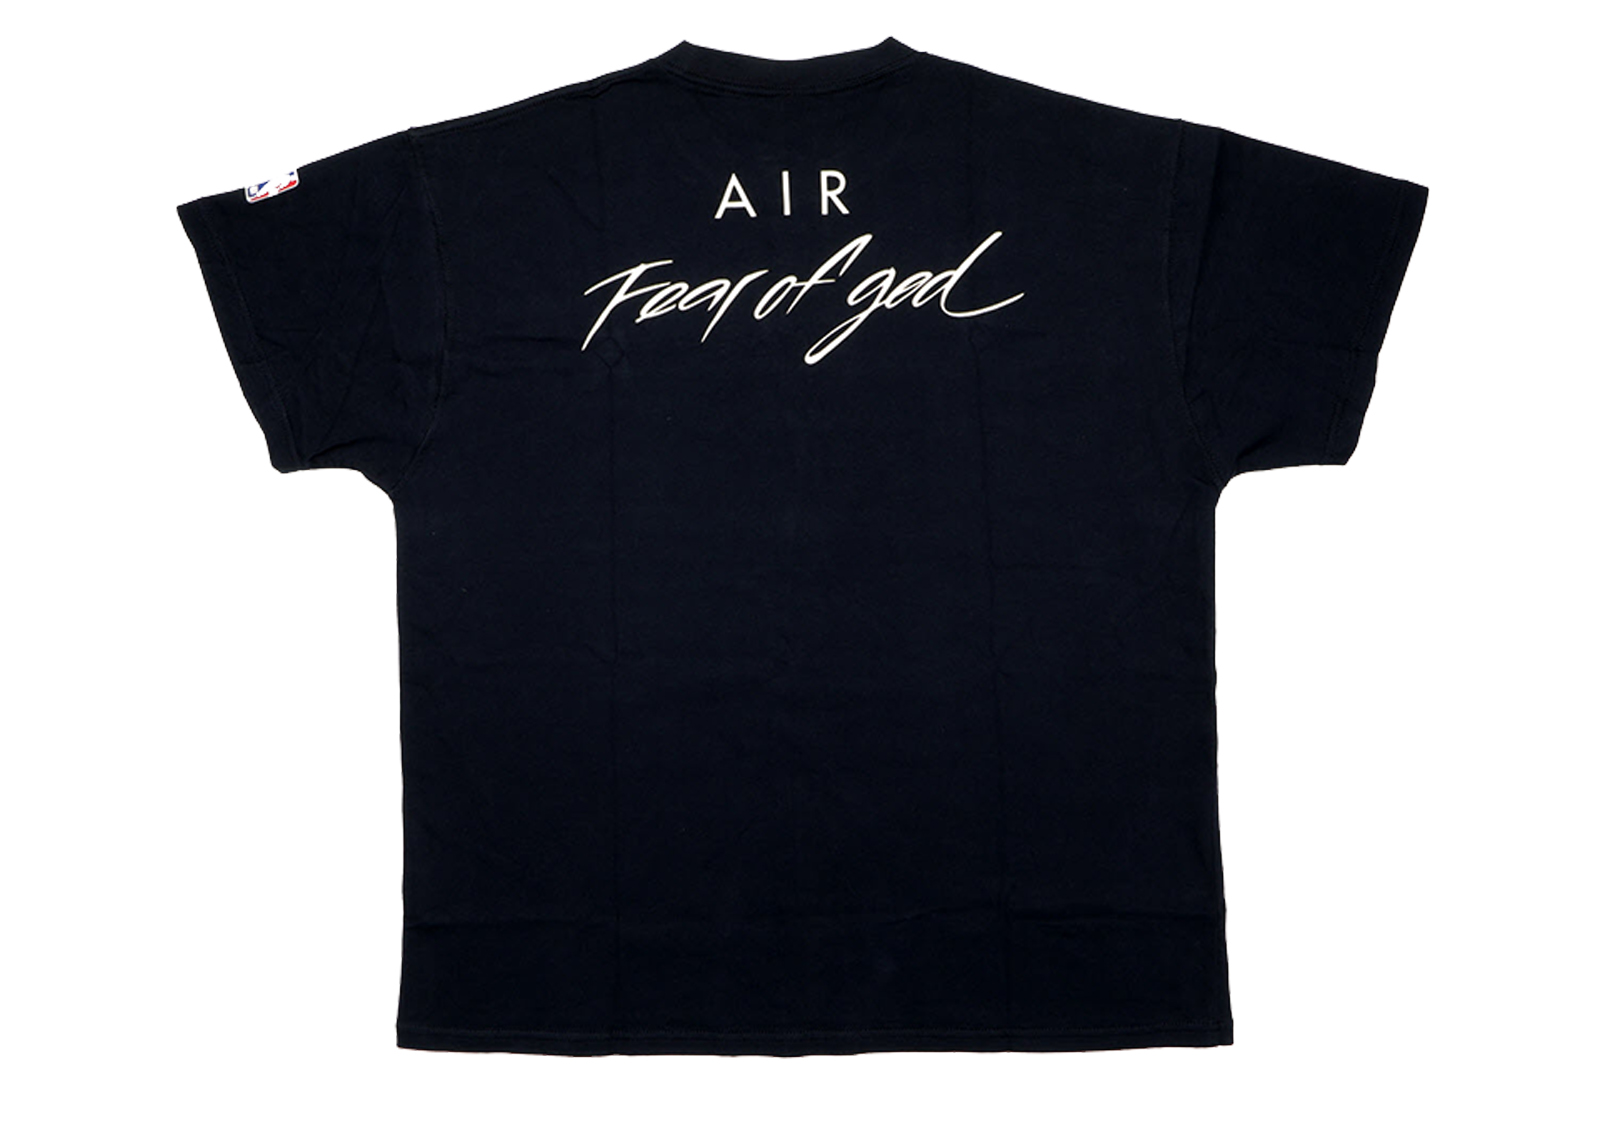 FEAR OF GOD x Nike Air Fear of God T-Shirt Black